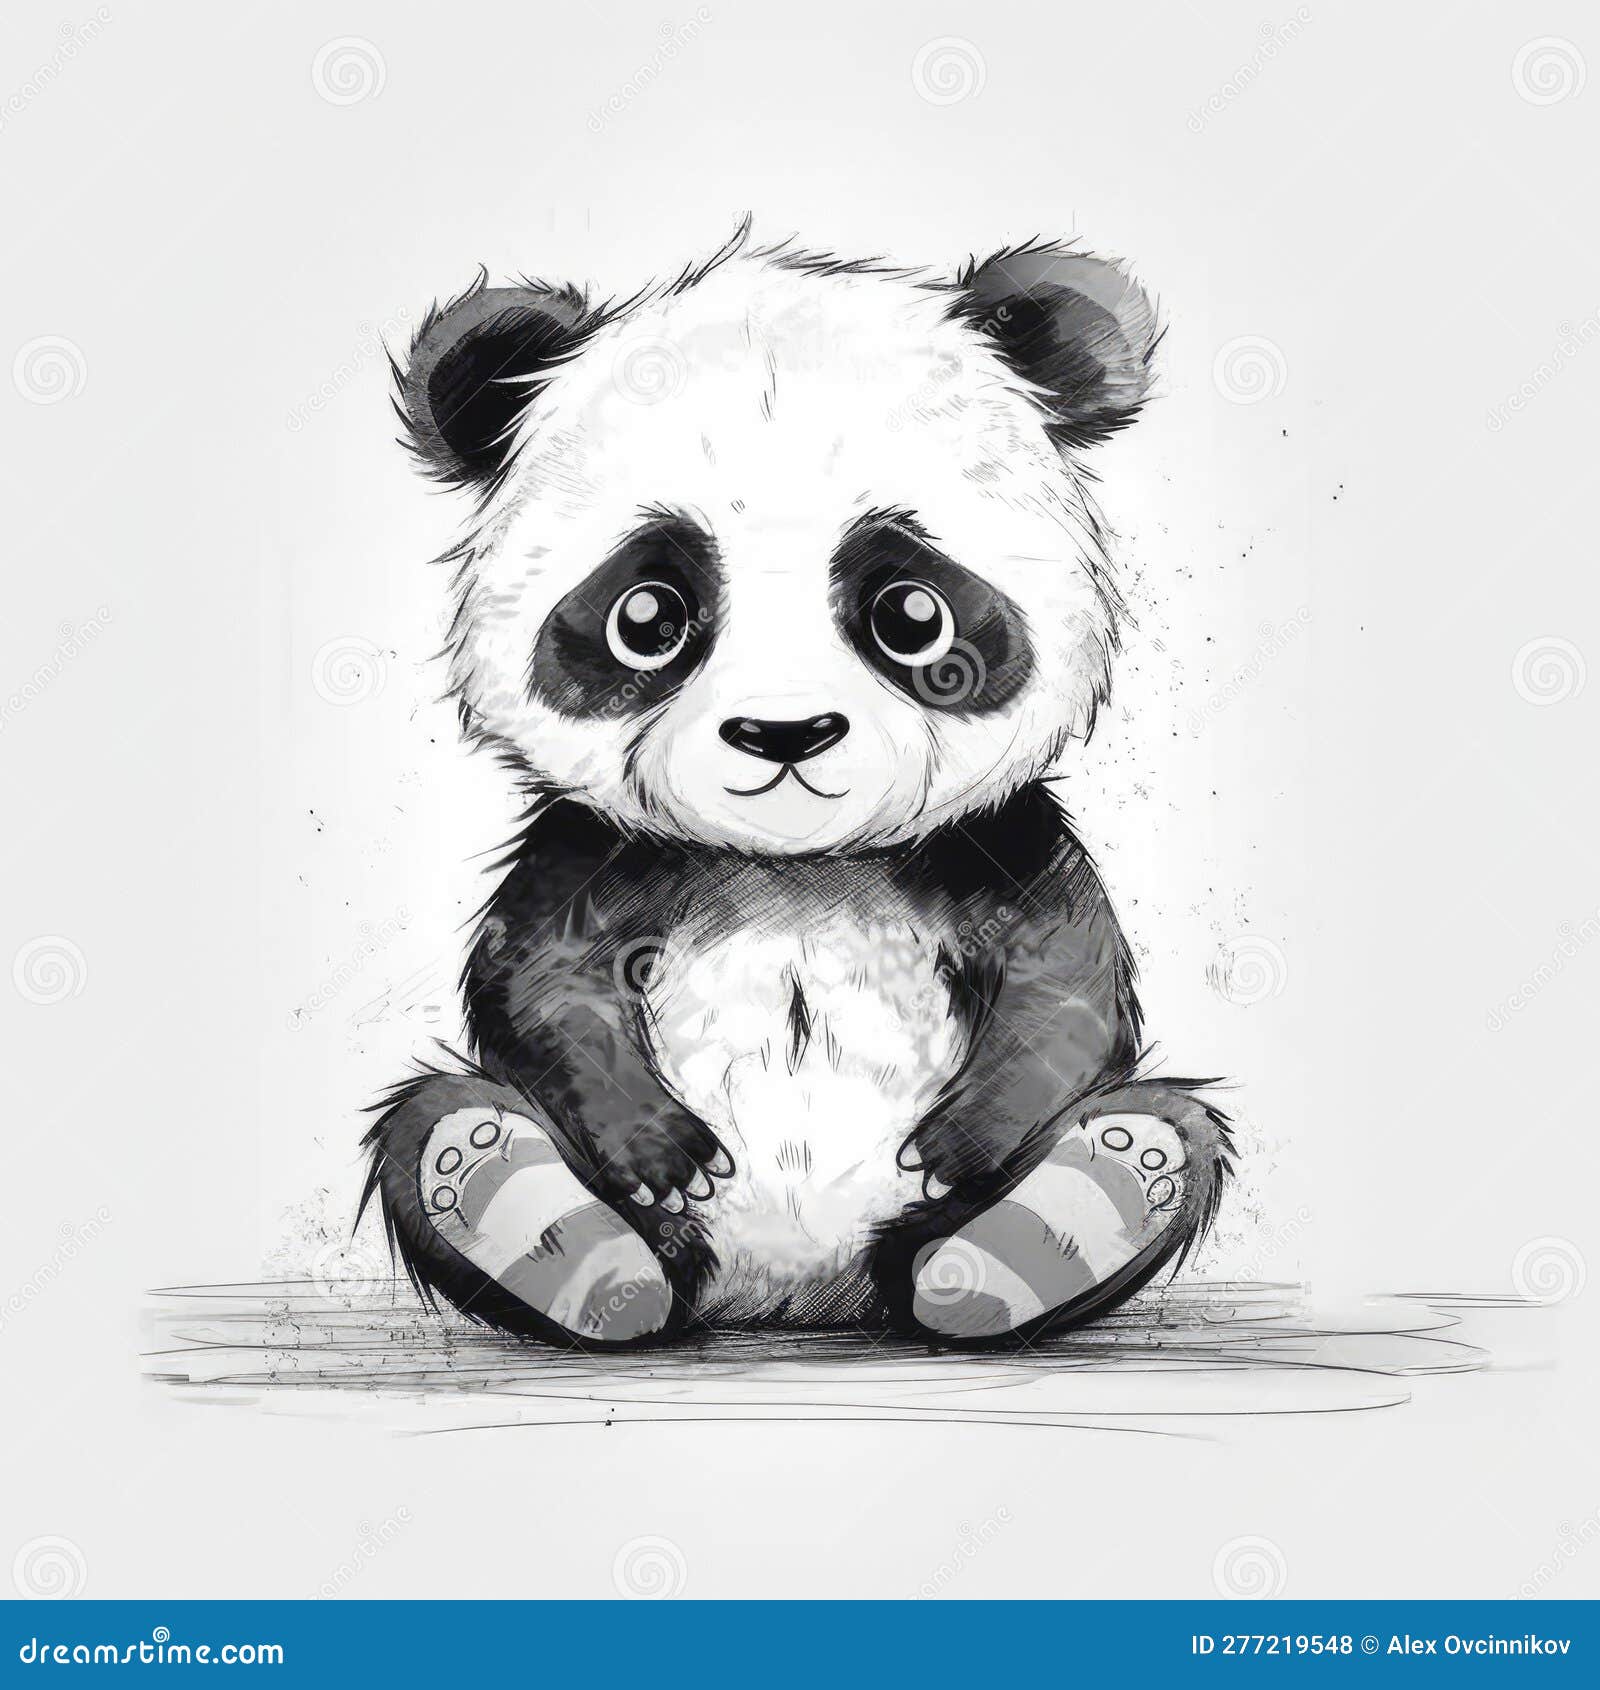 How to Draw a Cute Panda-saigonsouth.com.vn